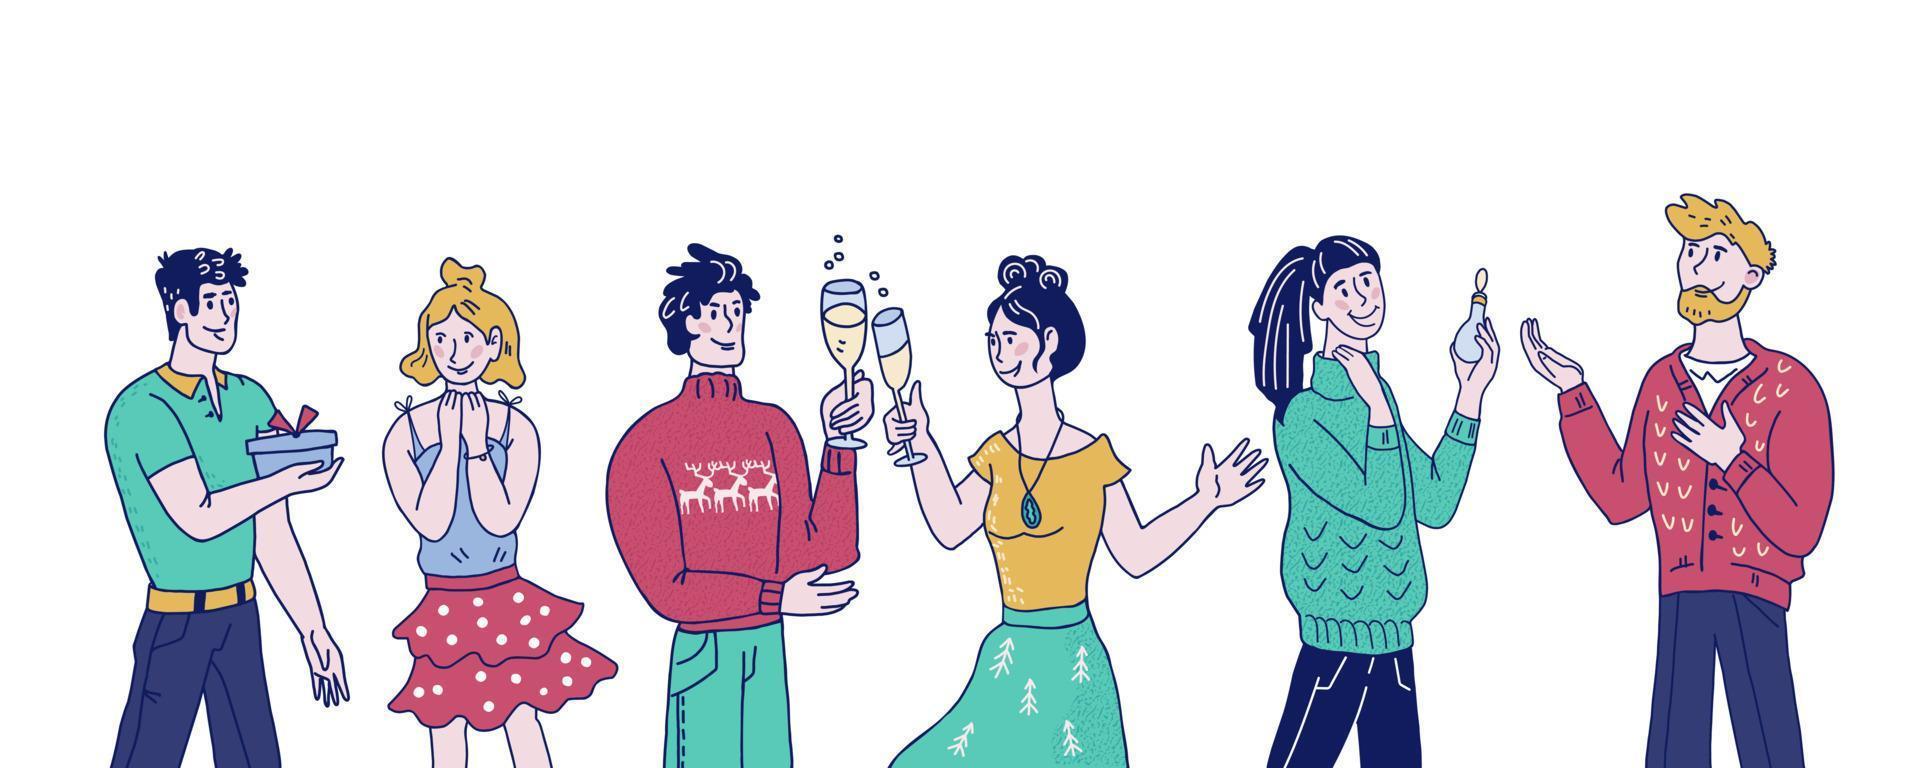 grupo de personas felices con sombrero de santa celebrando la fiesta de navidad corporativa. hombres y mujeres intercambian regalos y se saludan con vacaciones de invierno de navidad y año nuevo. ilustración de dibujo vectorial. vector